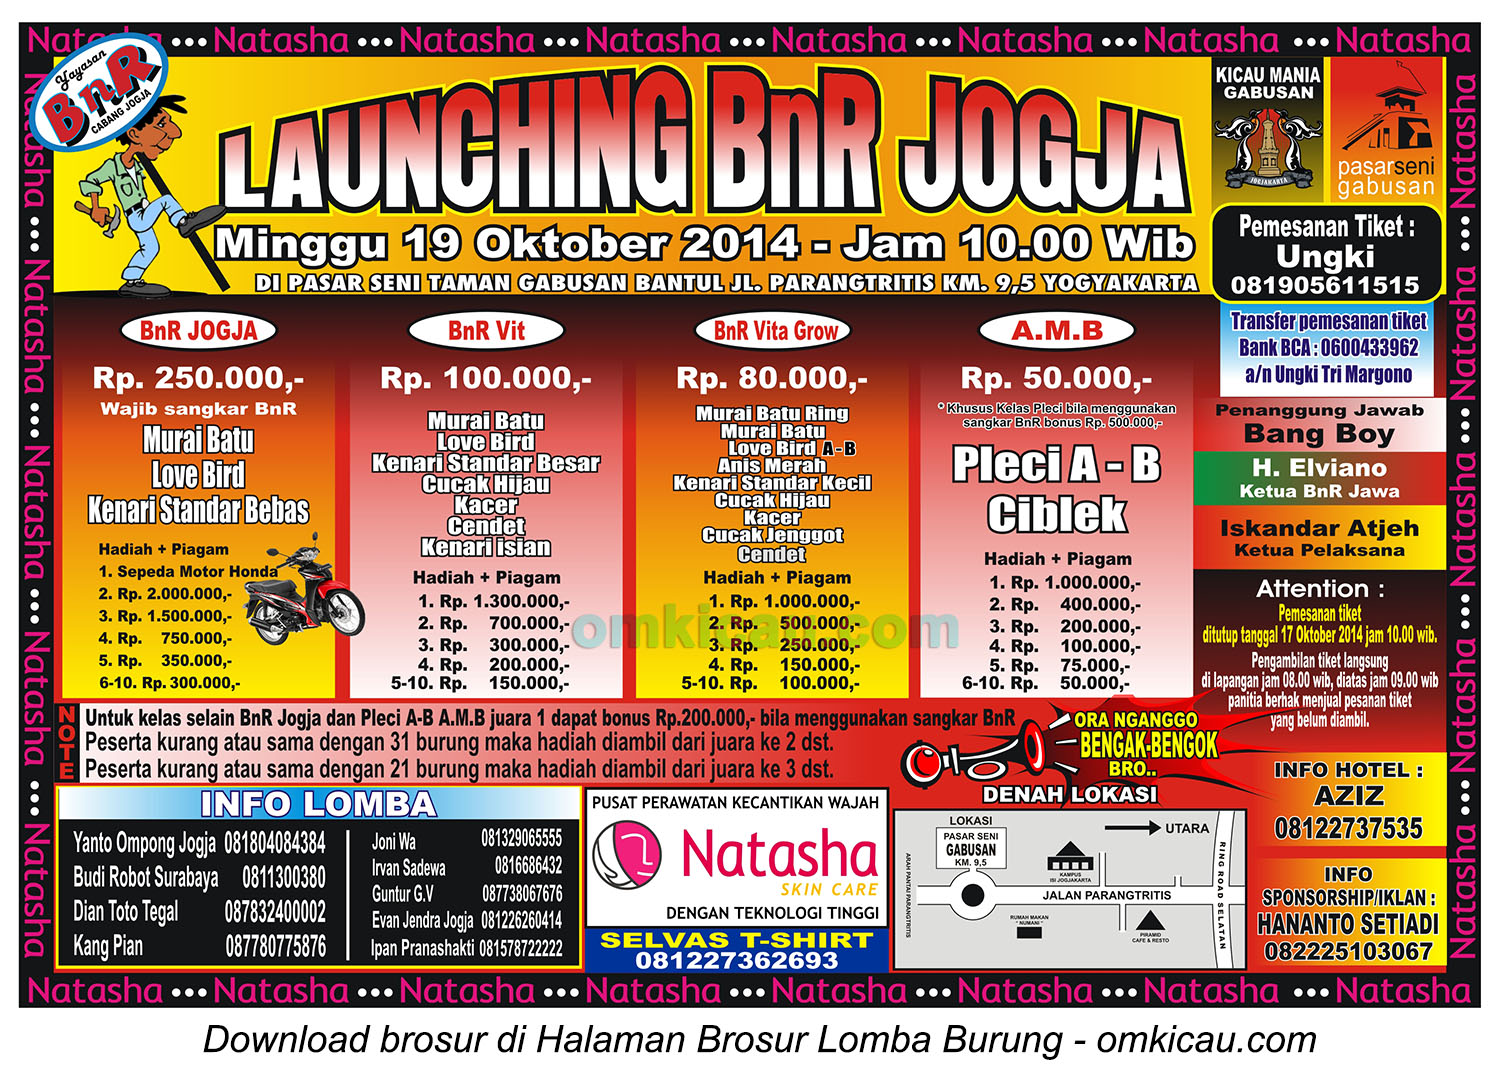 Brosur Launching BnR Jogja, 19 Oktober 2014